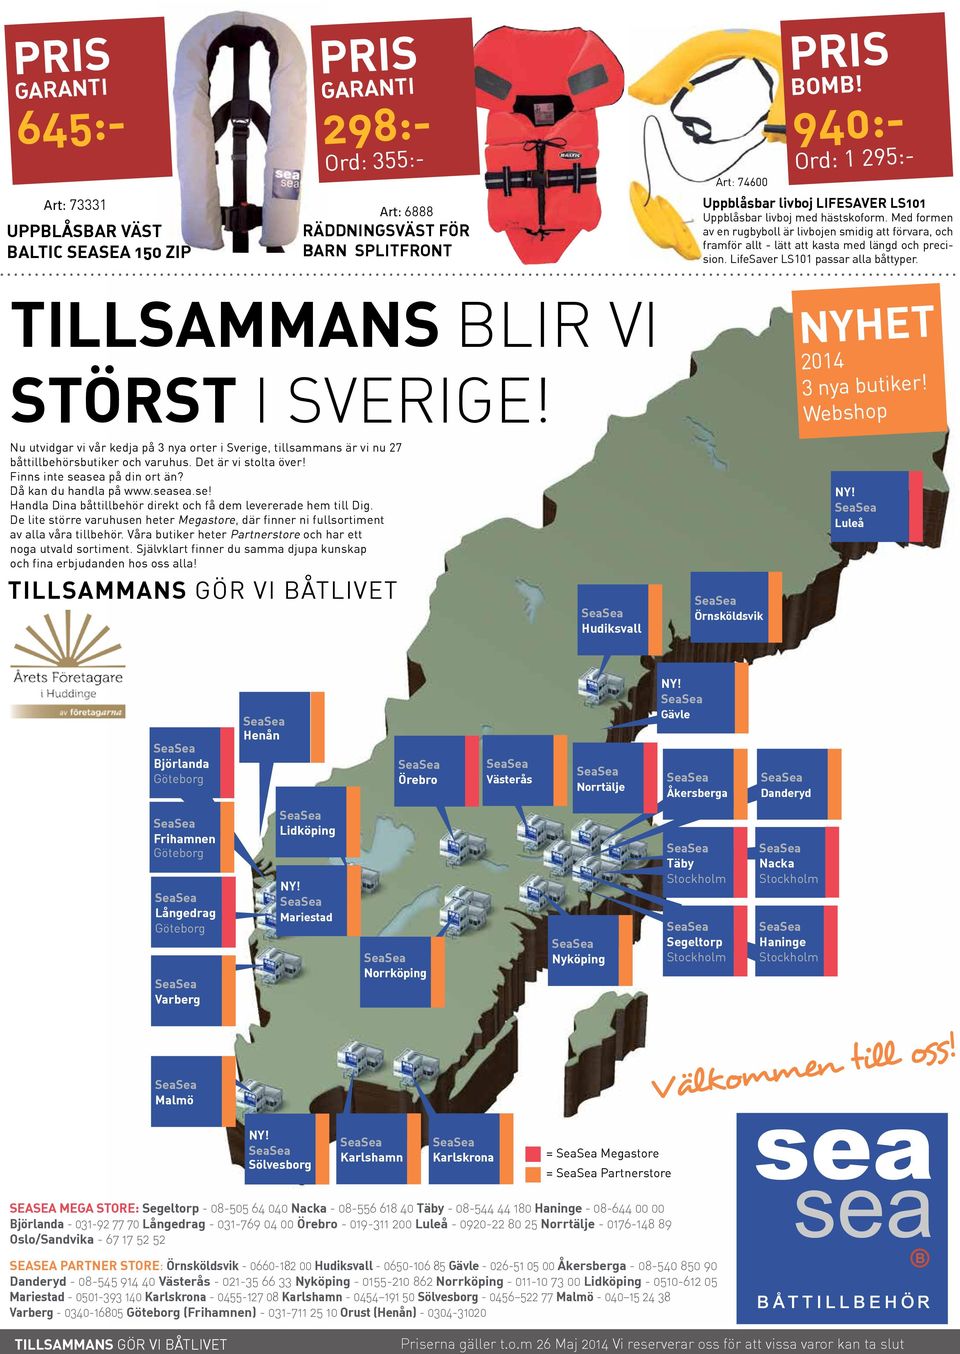 TILLSAMMANS BLIR VI STÖRST I Sverige! NYHET 2014 3 nya butiker! Webshop Nu utvidgar vi vår kedja på 3 nya orter i Sverige, tillsammans är vi nu 27 båttillbehörsbutiker och varuhus.